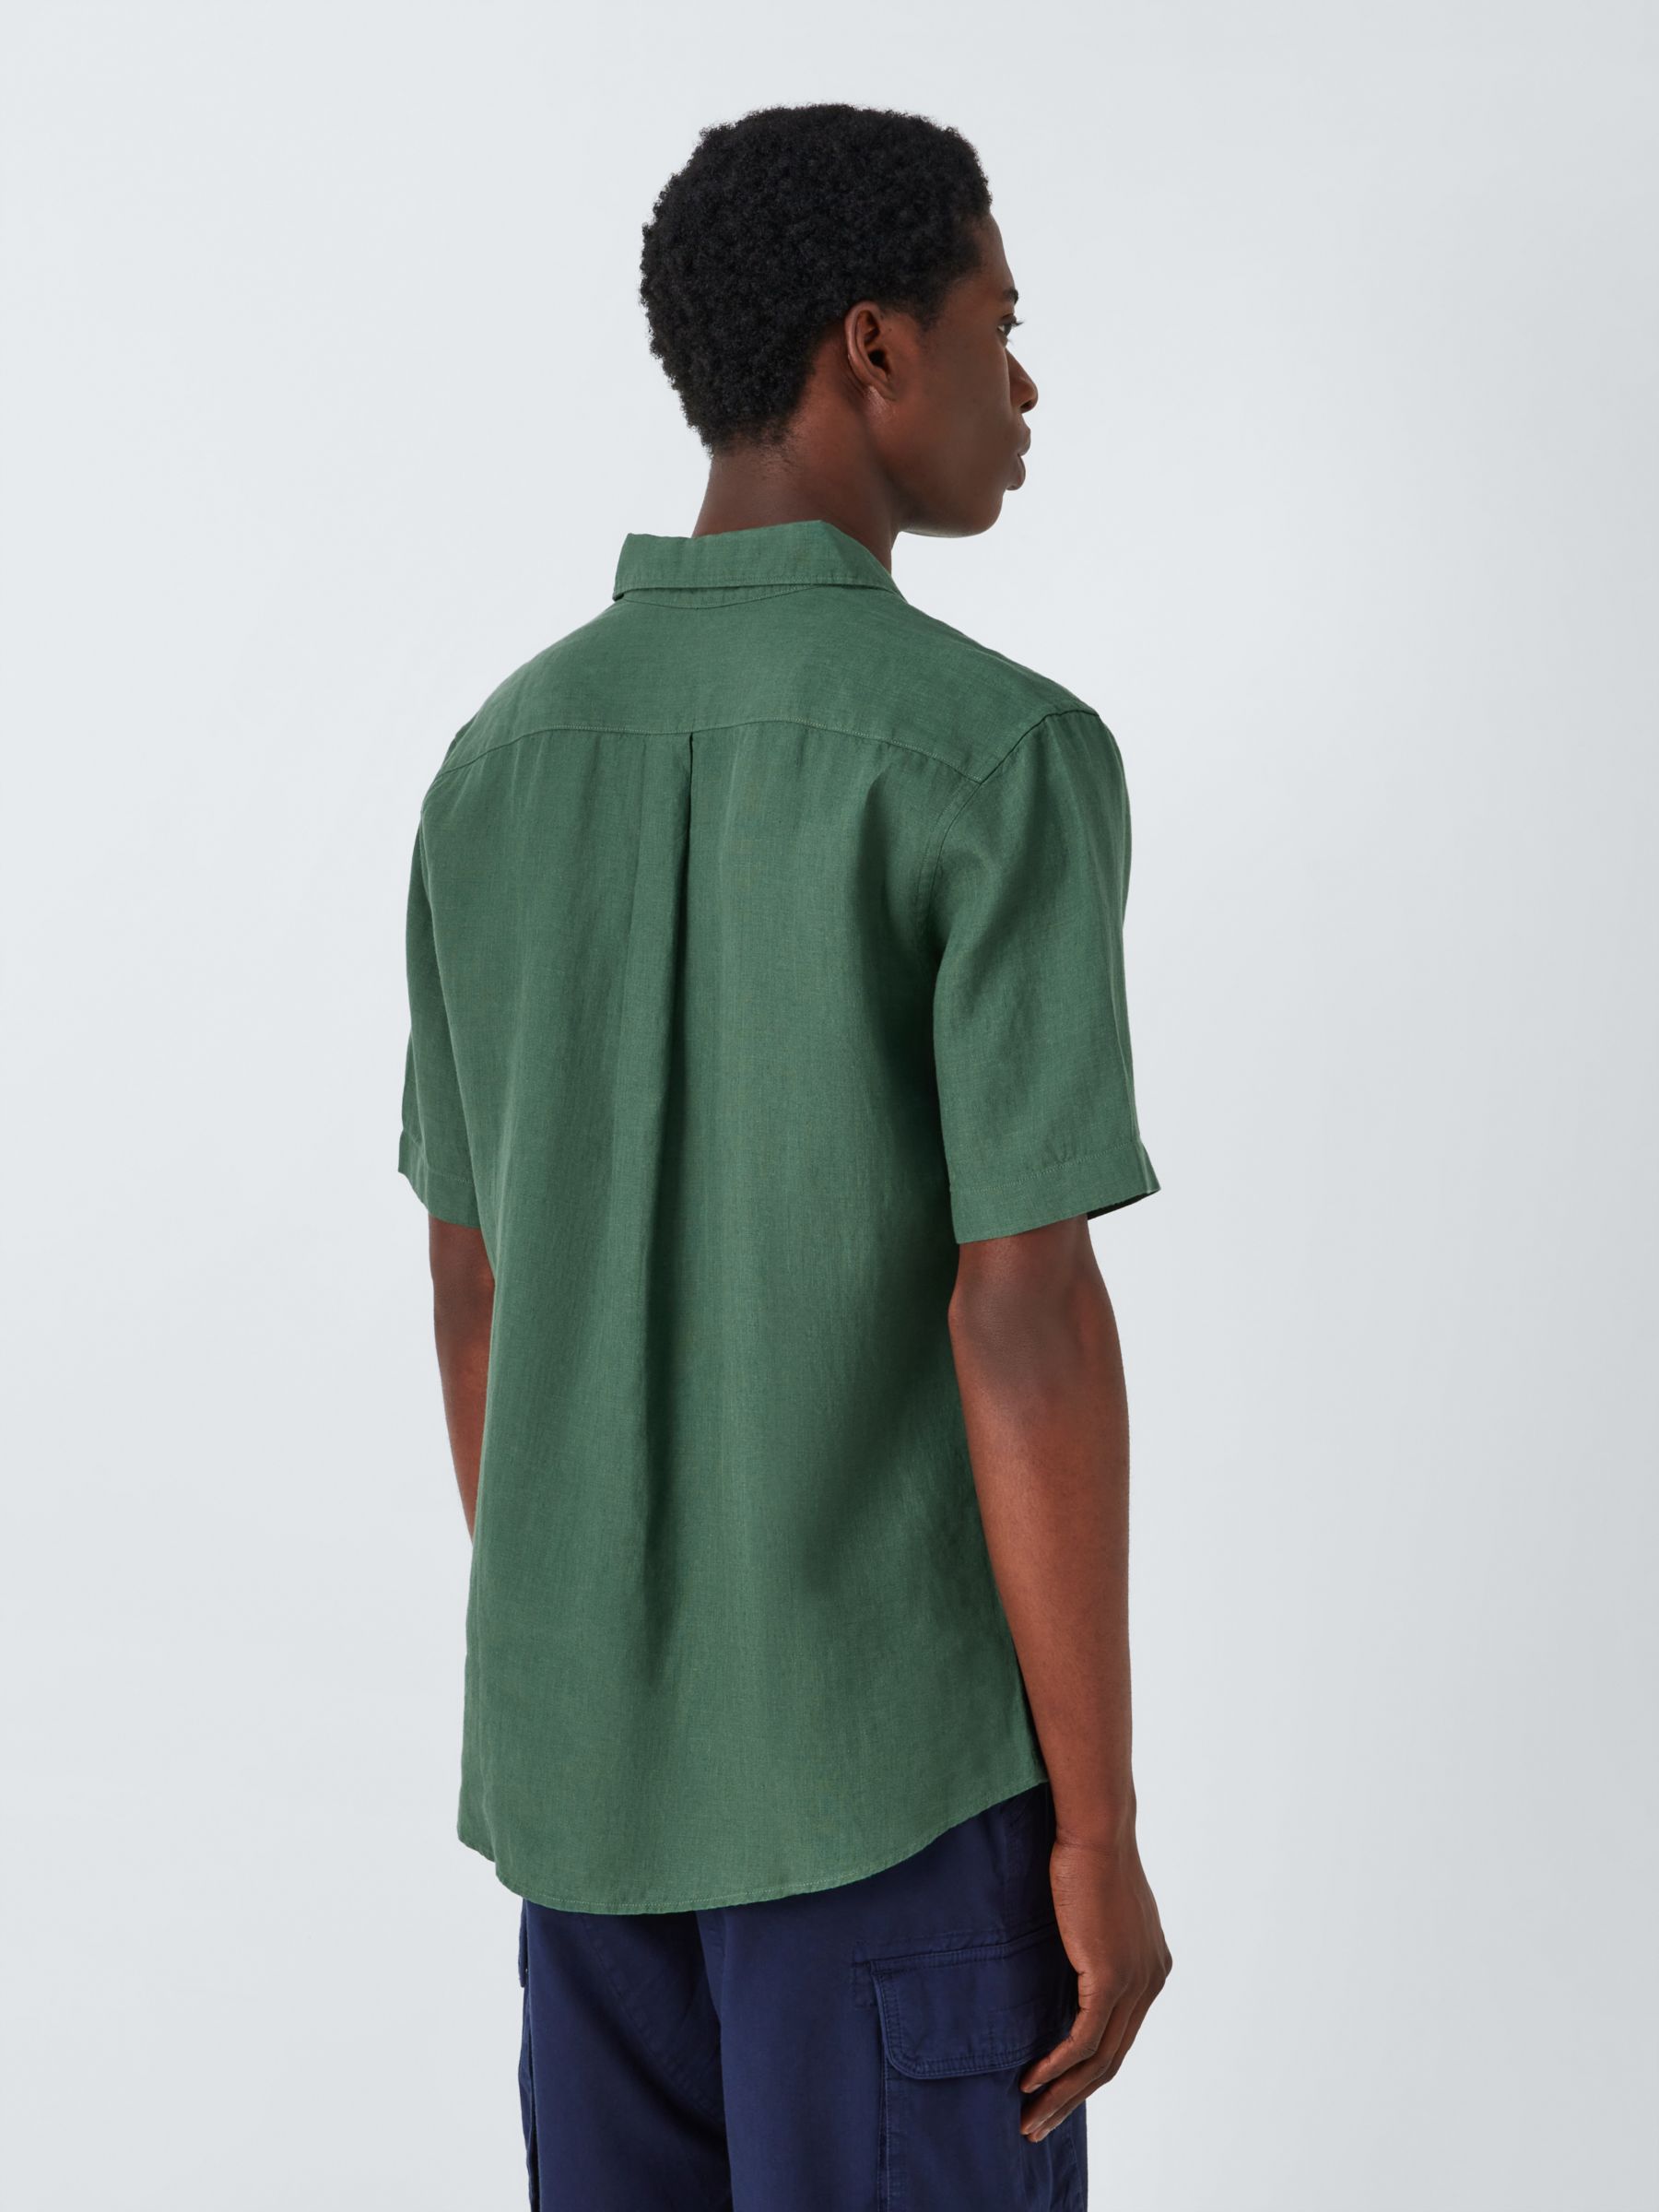 John Lewis Linen Short Sleeve Shirt, Green, S